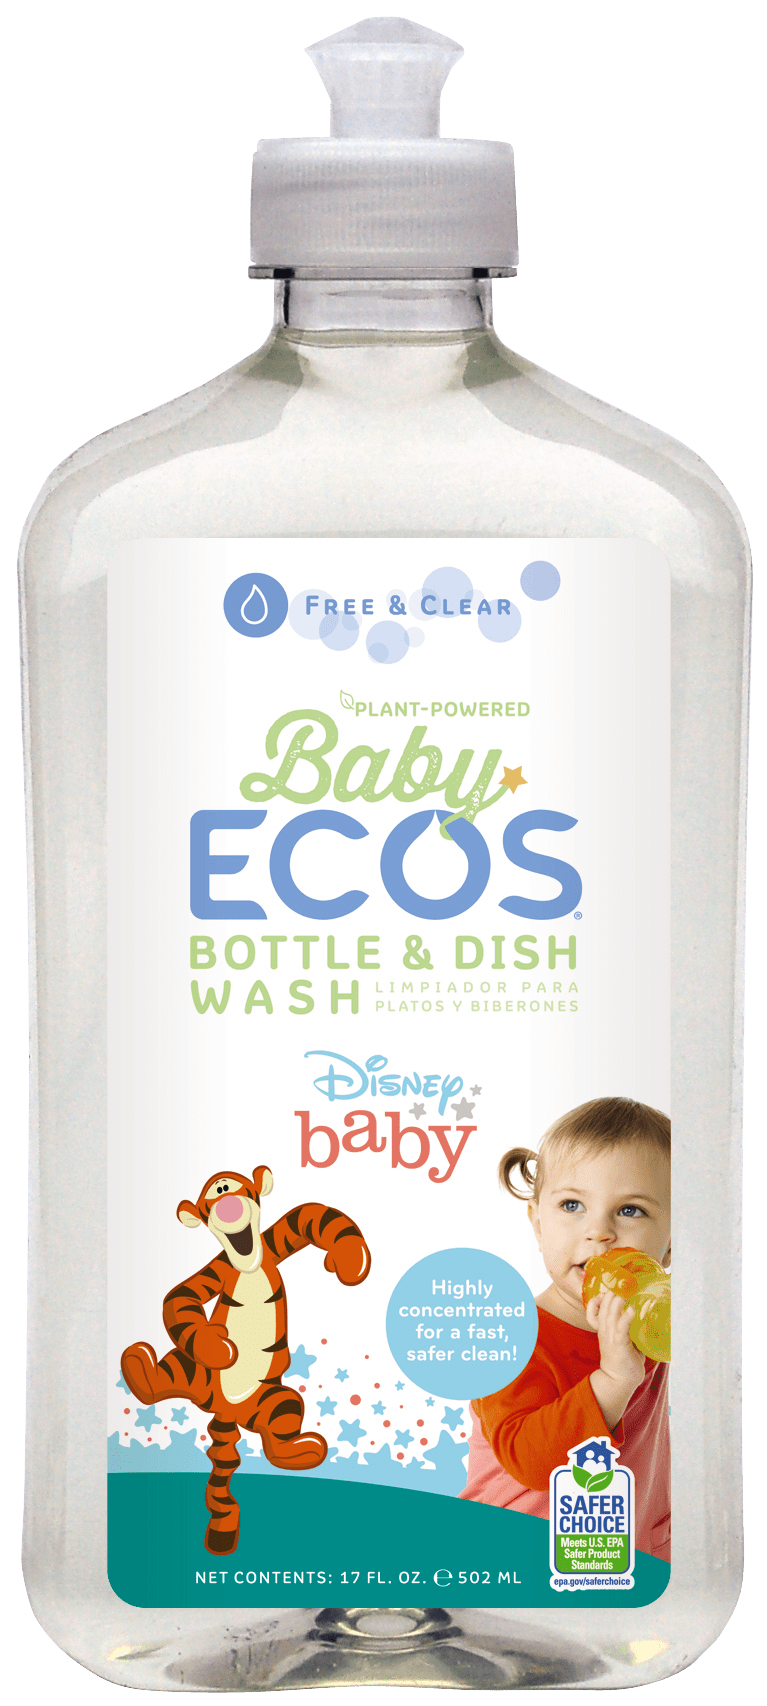 https://www.momjunction.com/wp-content/uploads/product-images/ecos-disney-baby-bottle--dish-wash_afl3154.png.webp